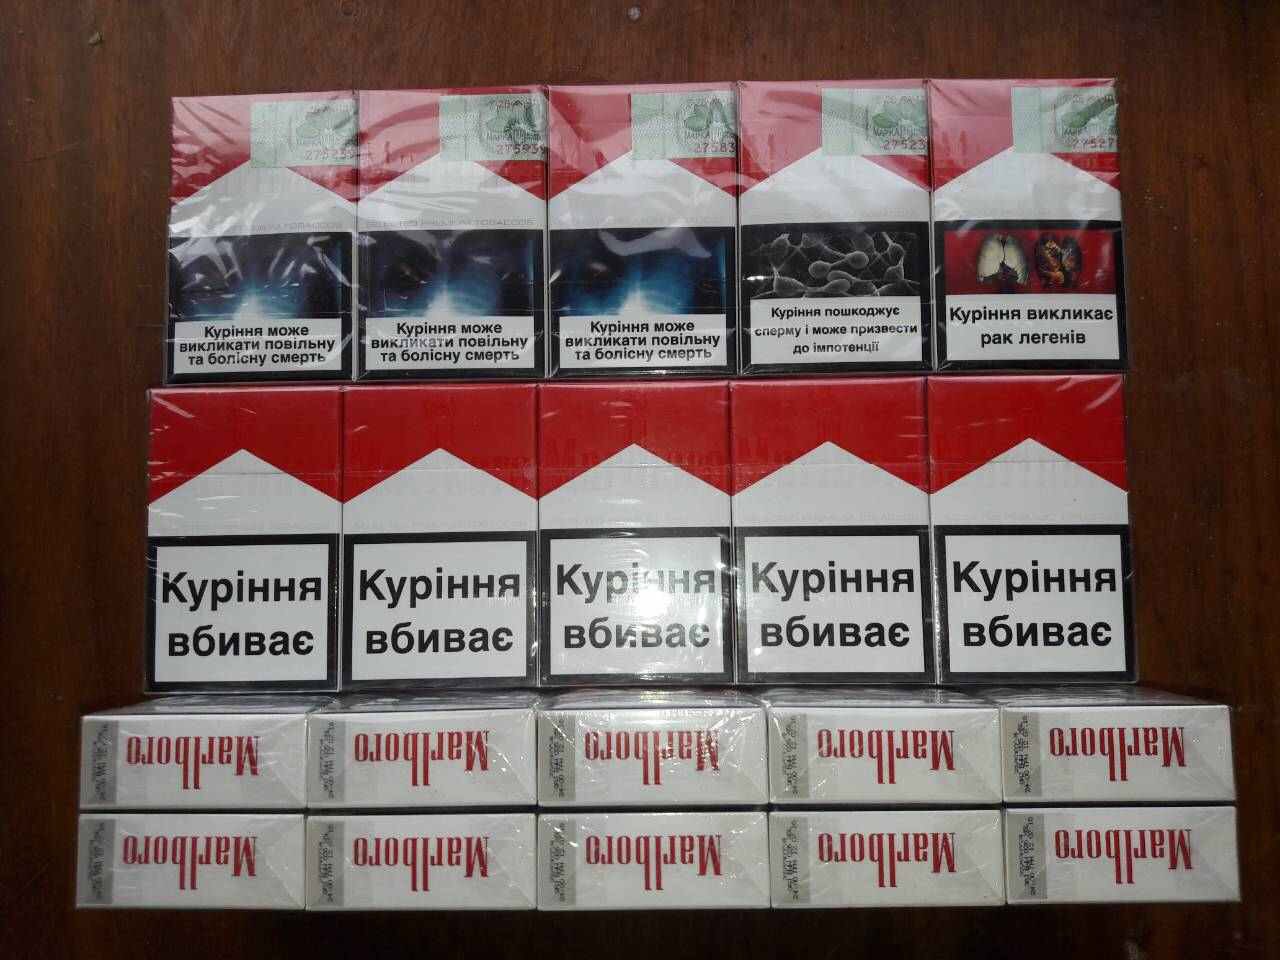 Купить сигареты доставка без предоплаты. Украинские сигареты. Мальборо сигареты Украины. Сигареты парламент без акциза. Украинские акцизный сигареты.